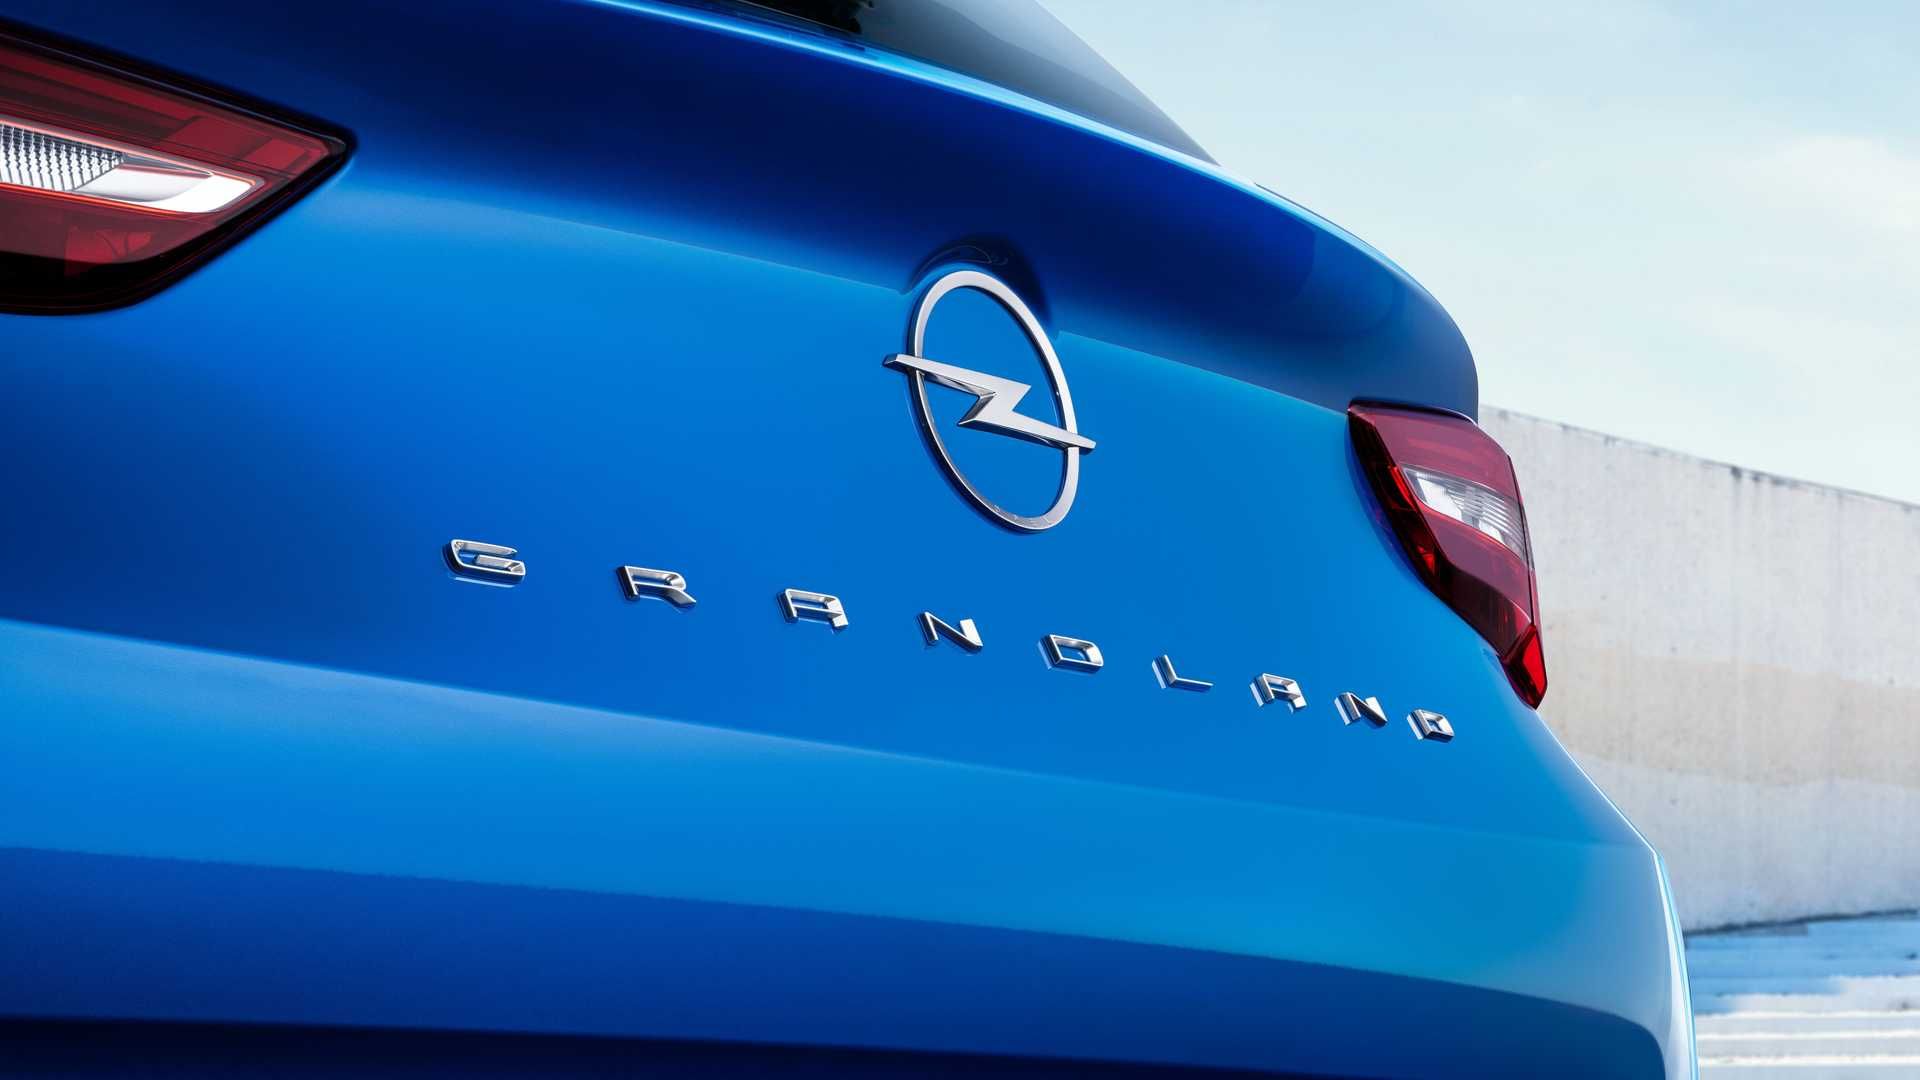 طراحی عقب فیس لیفت کراس اور اوپل گرندلند 2022 / 2022 Opel Grandland crossover آبی رنگ